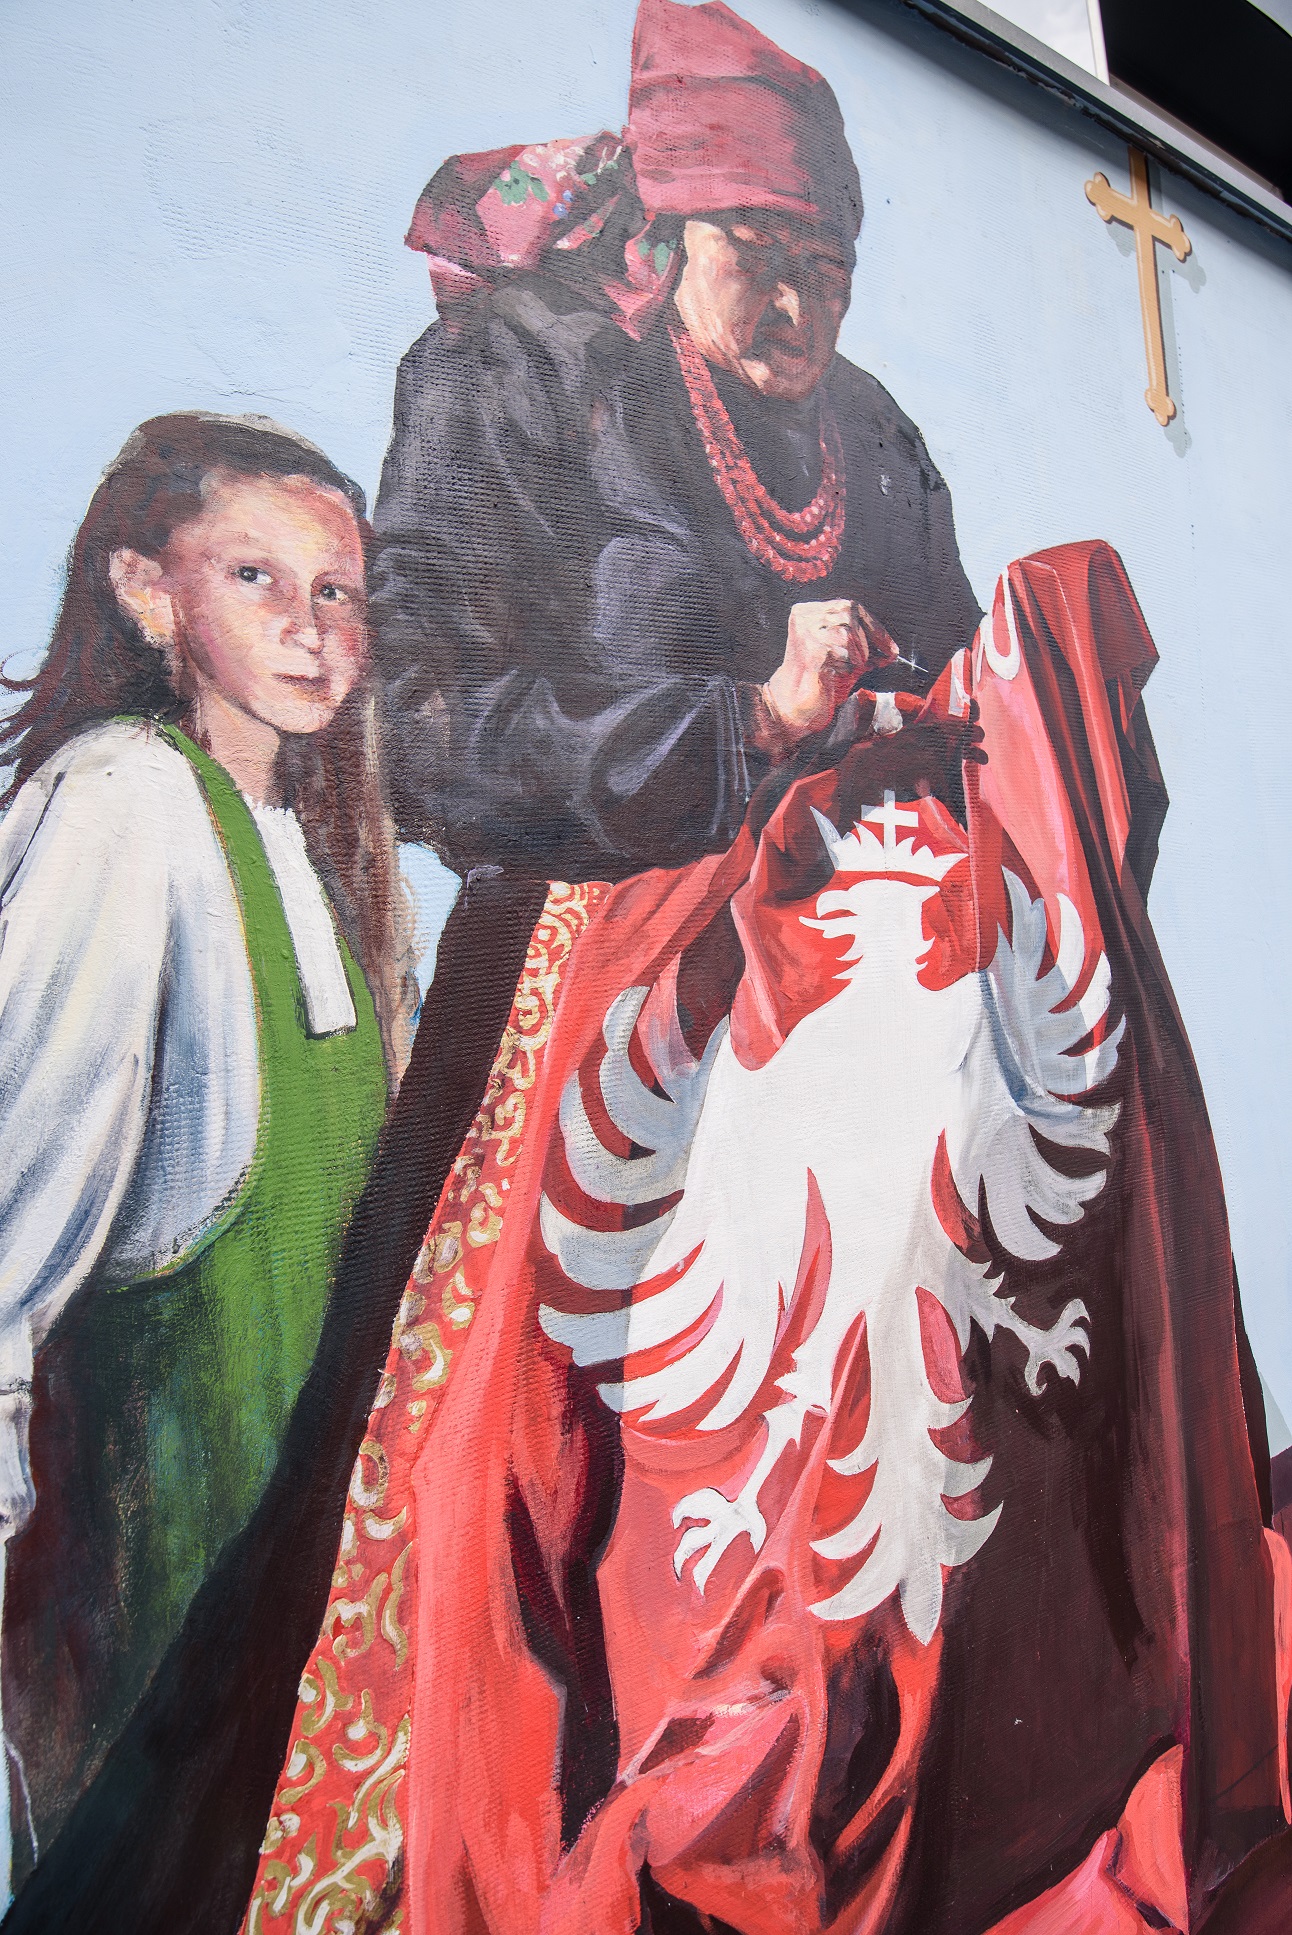 Kobieta w tradycyjnym śląckim stroju wyszywa orła na czerwonej tkaninie , towarzyszy jej dziewczynka twarzą zwrócona do oglądającego mural.